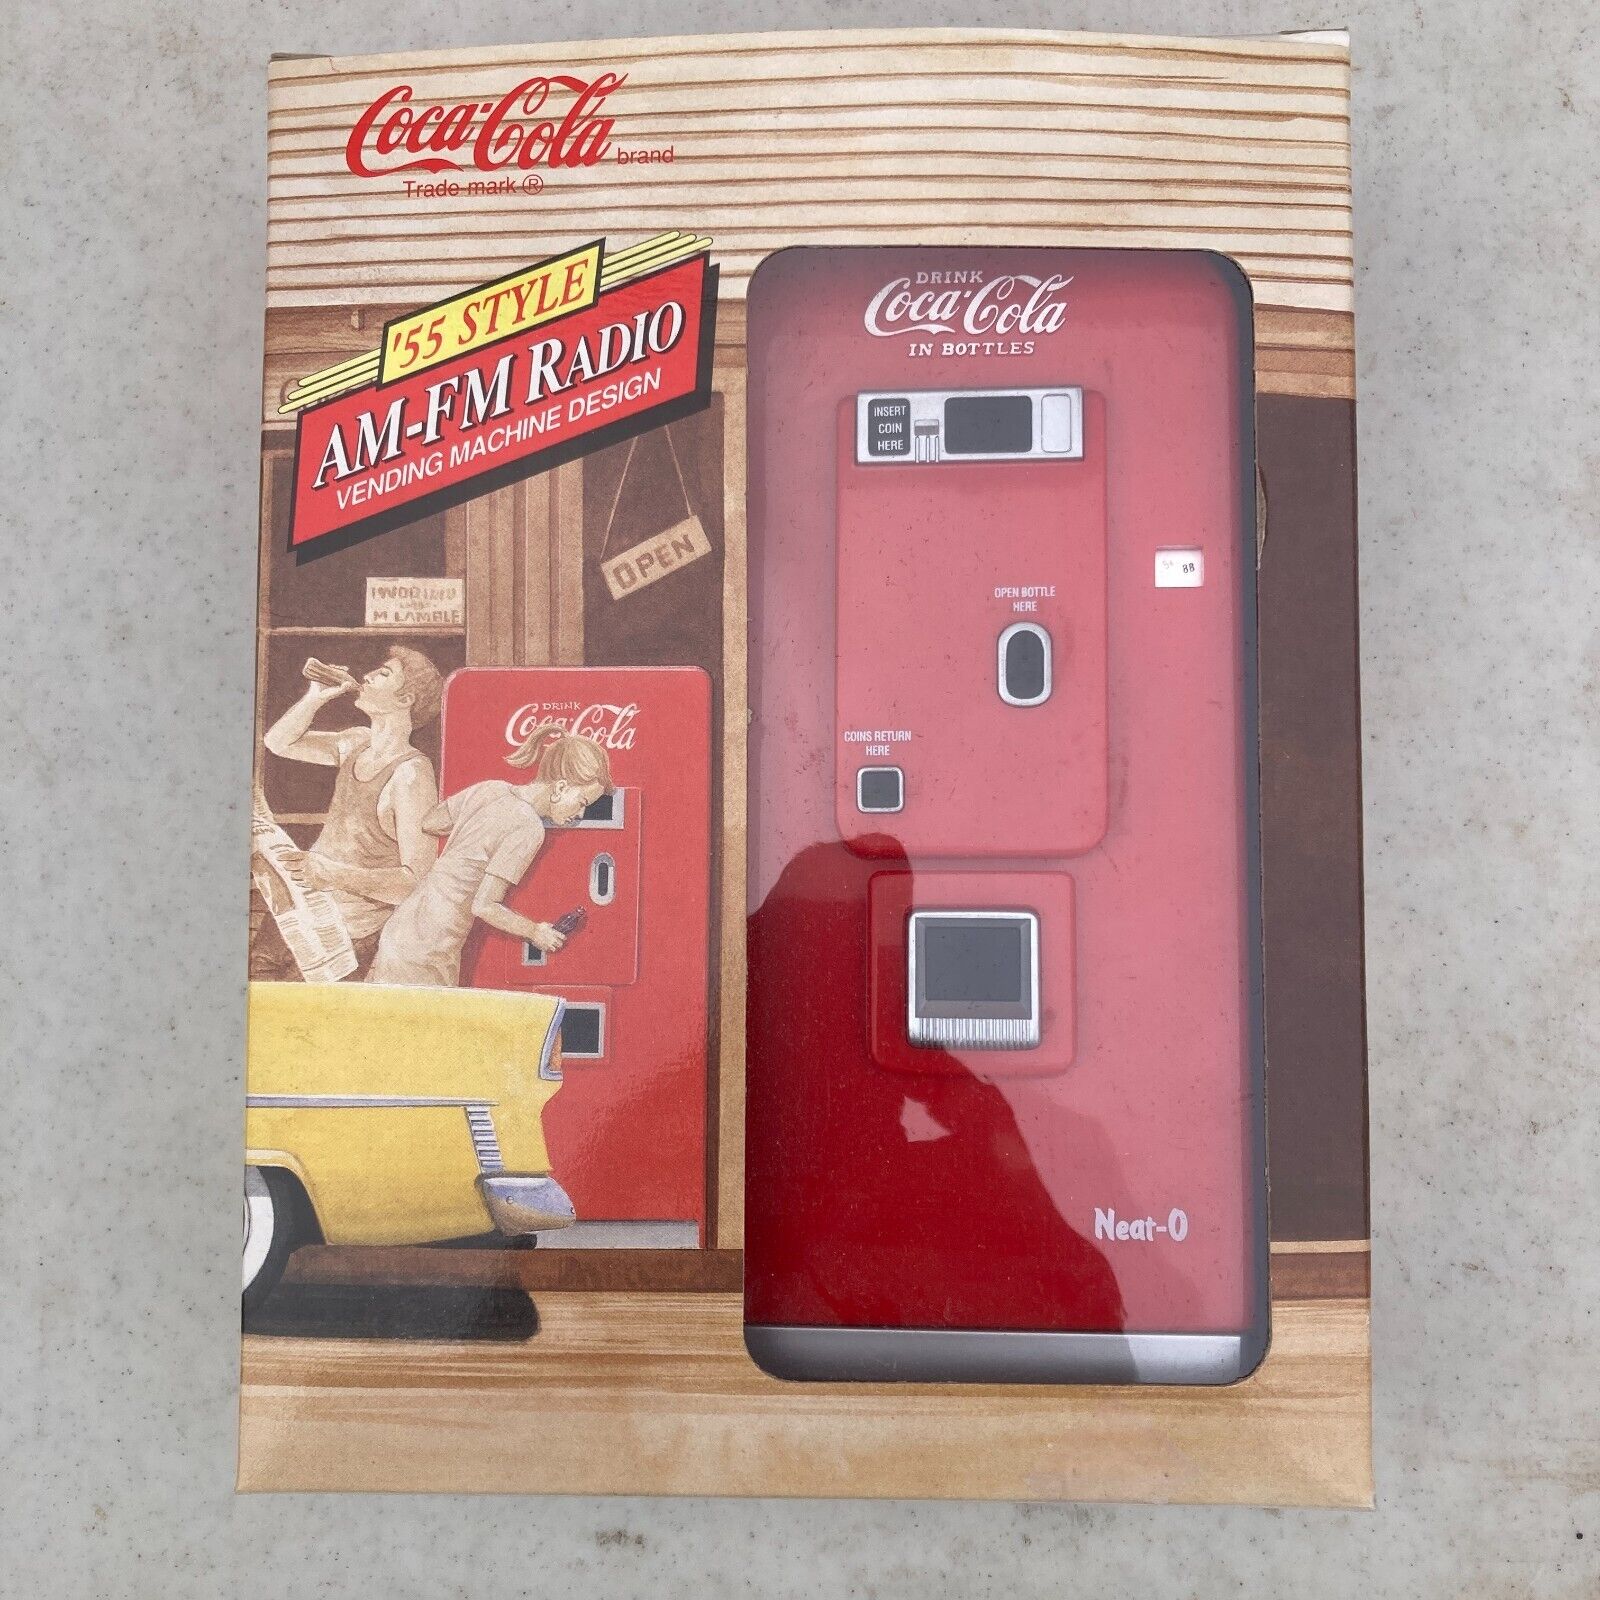 Coca Cola \'55 Style AM FM Radio Vending Machine Design Red 1992 Coke